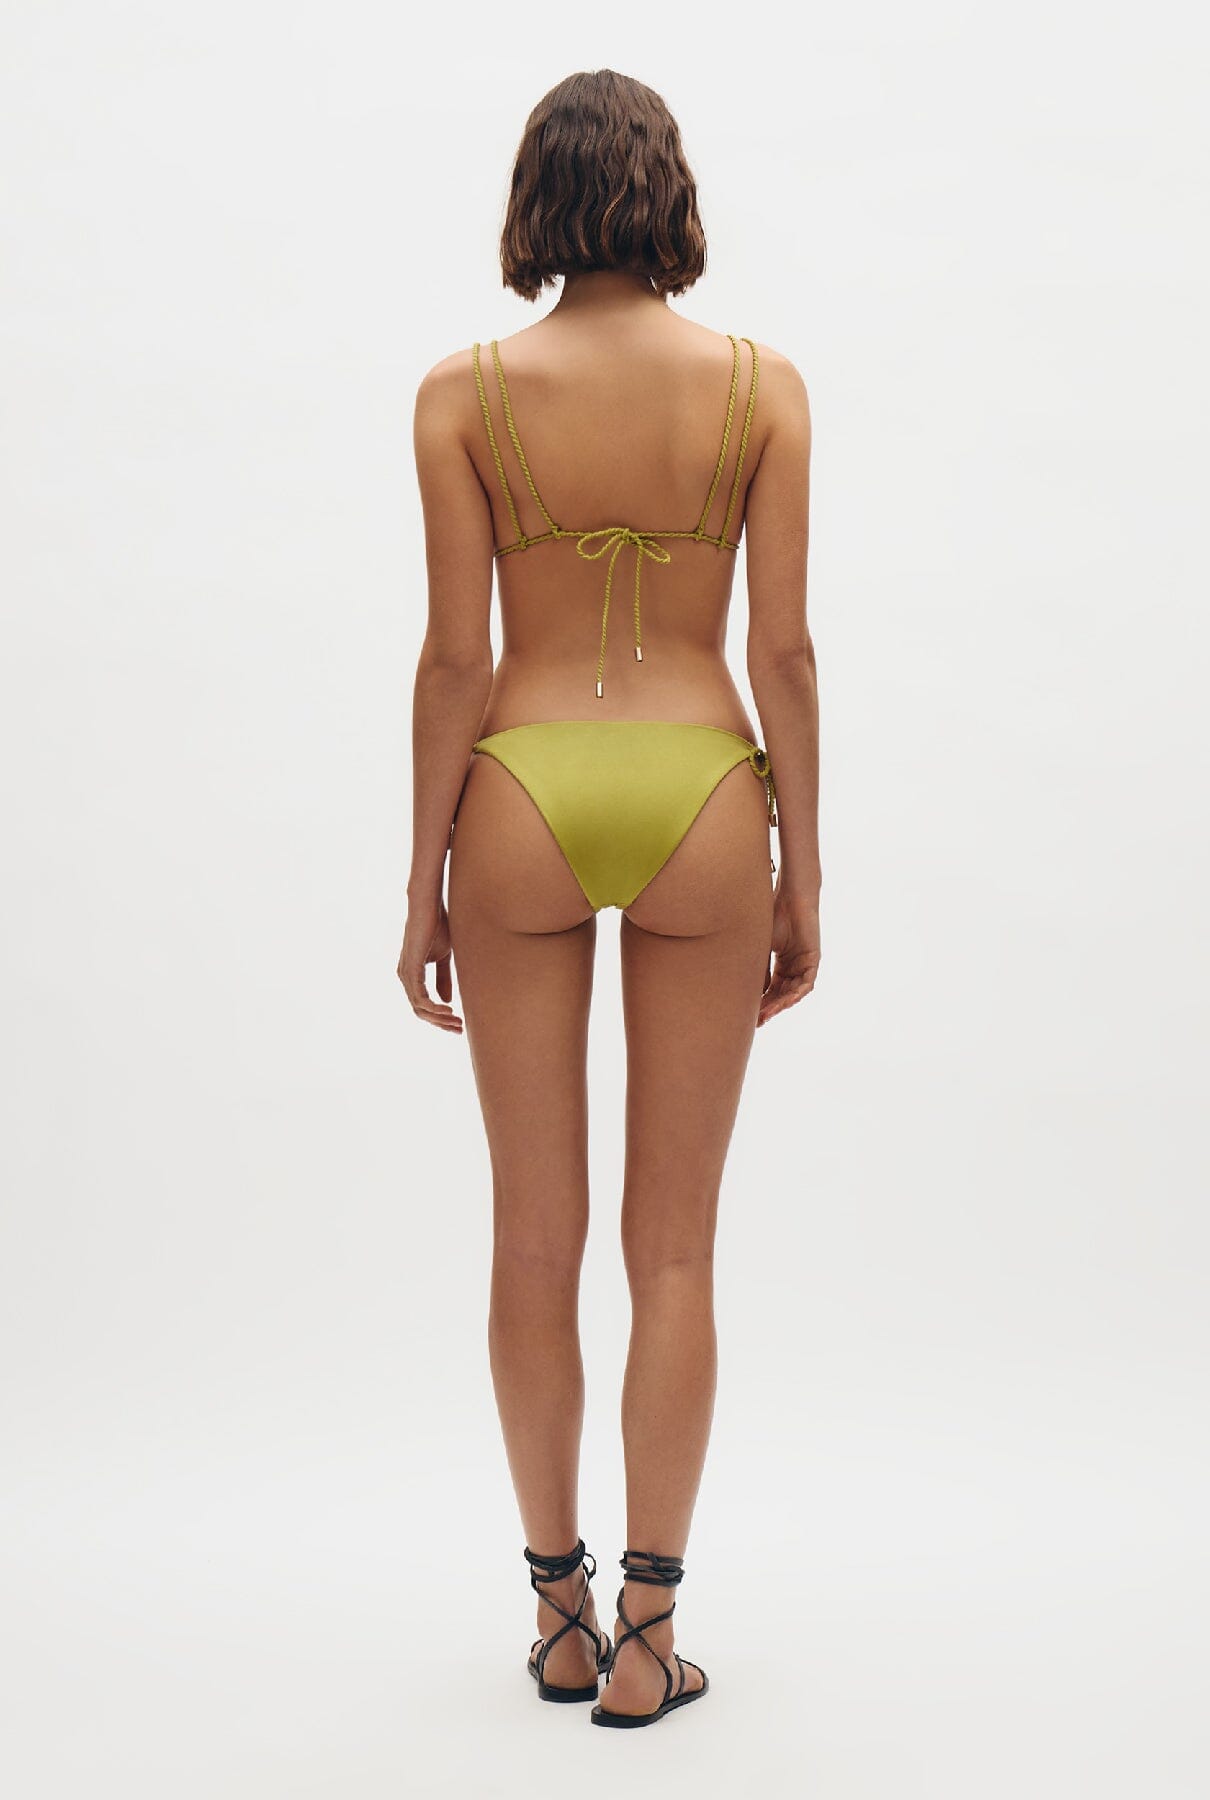 Braga de bikini ajustable con lazo Swimwear Simorra 